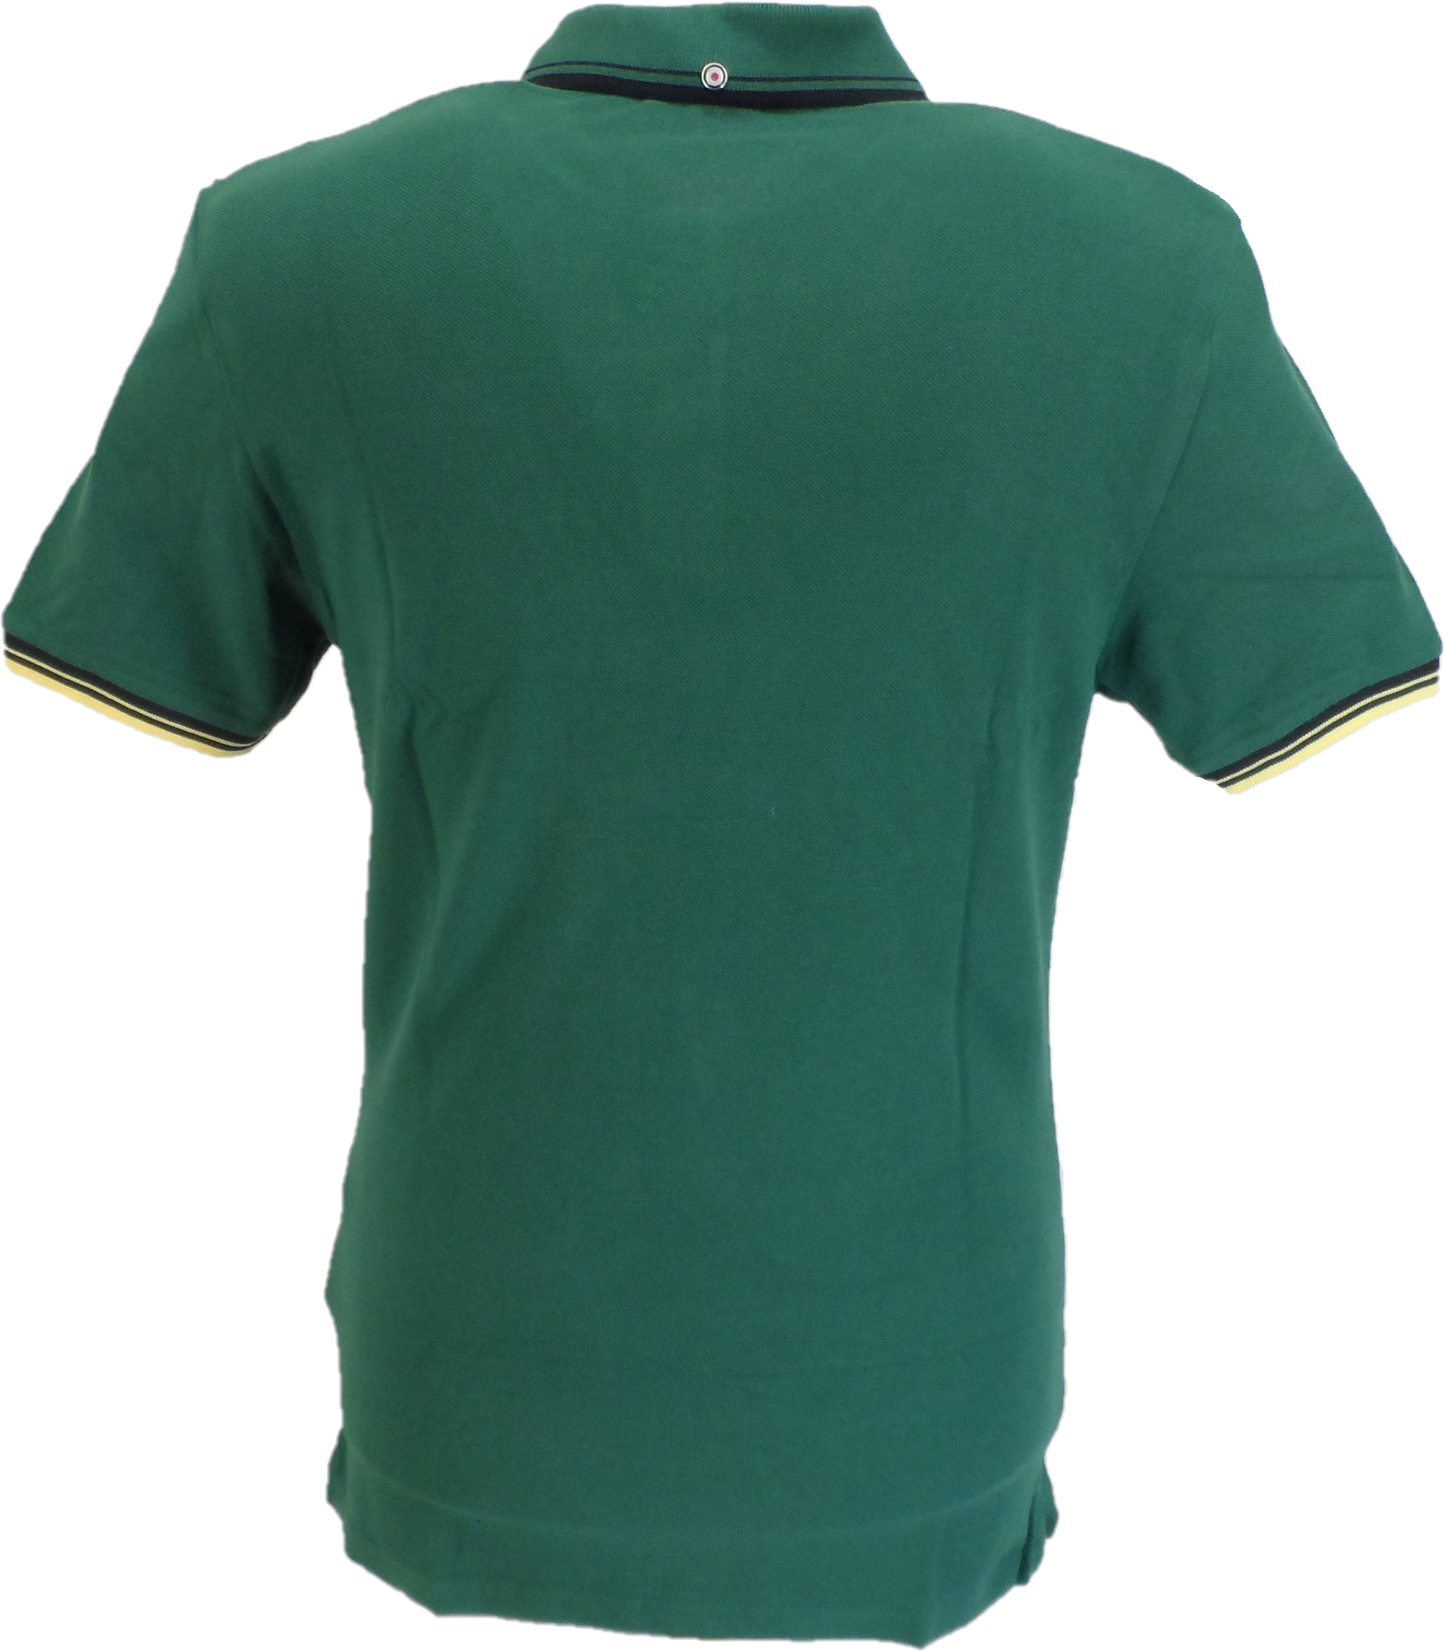 Ben Sherman Mens Signature Fraser Green 100% Cotton Polo Shirt …